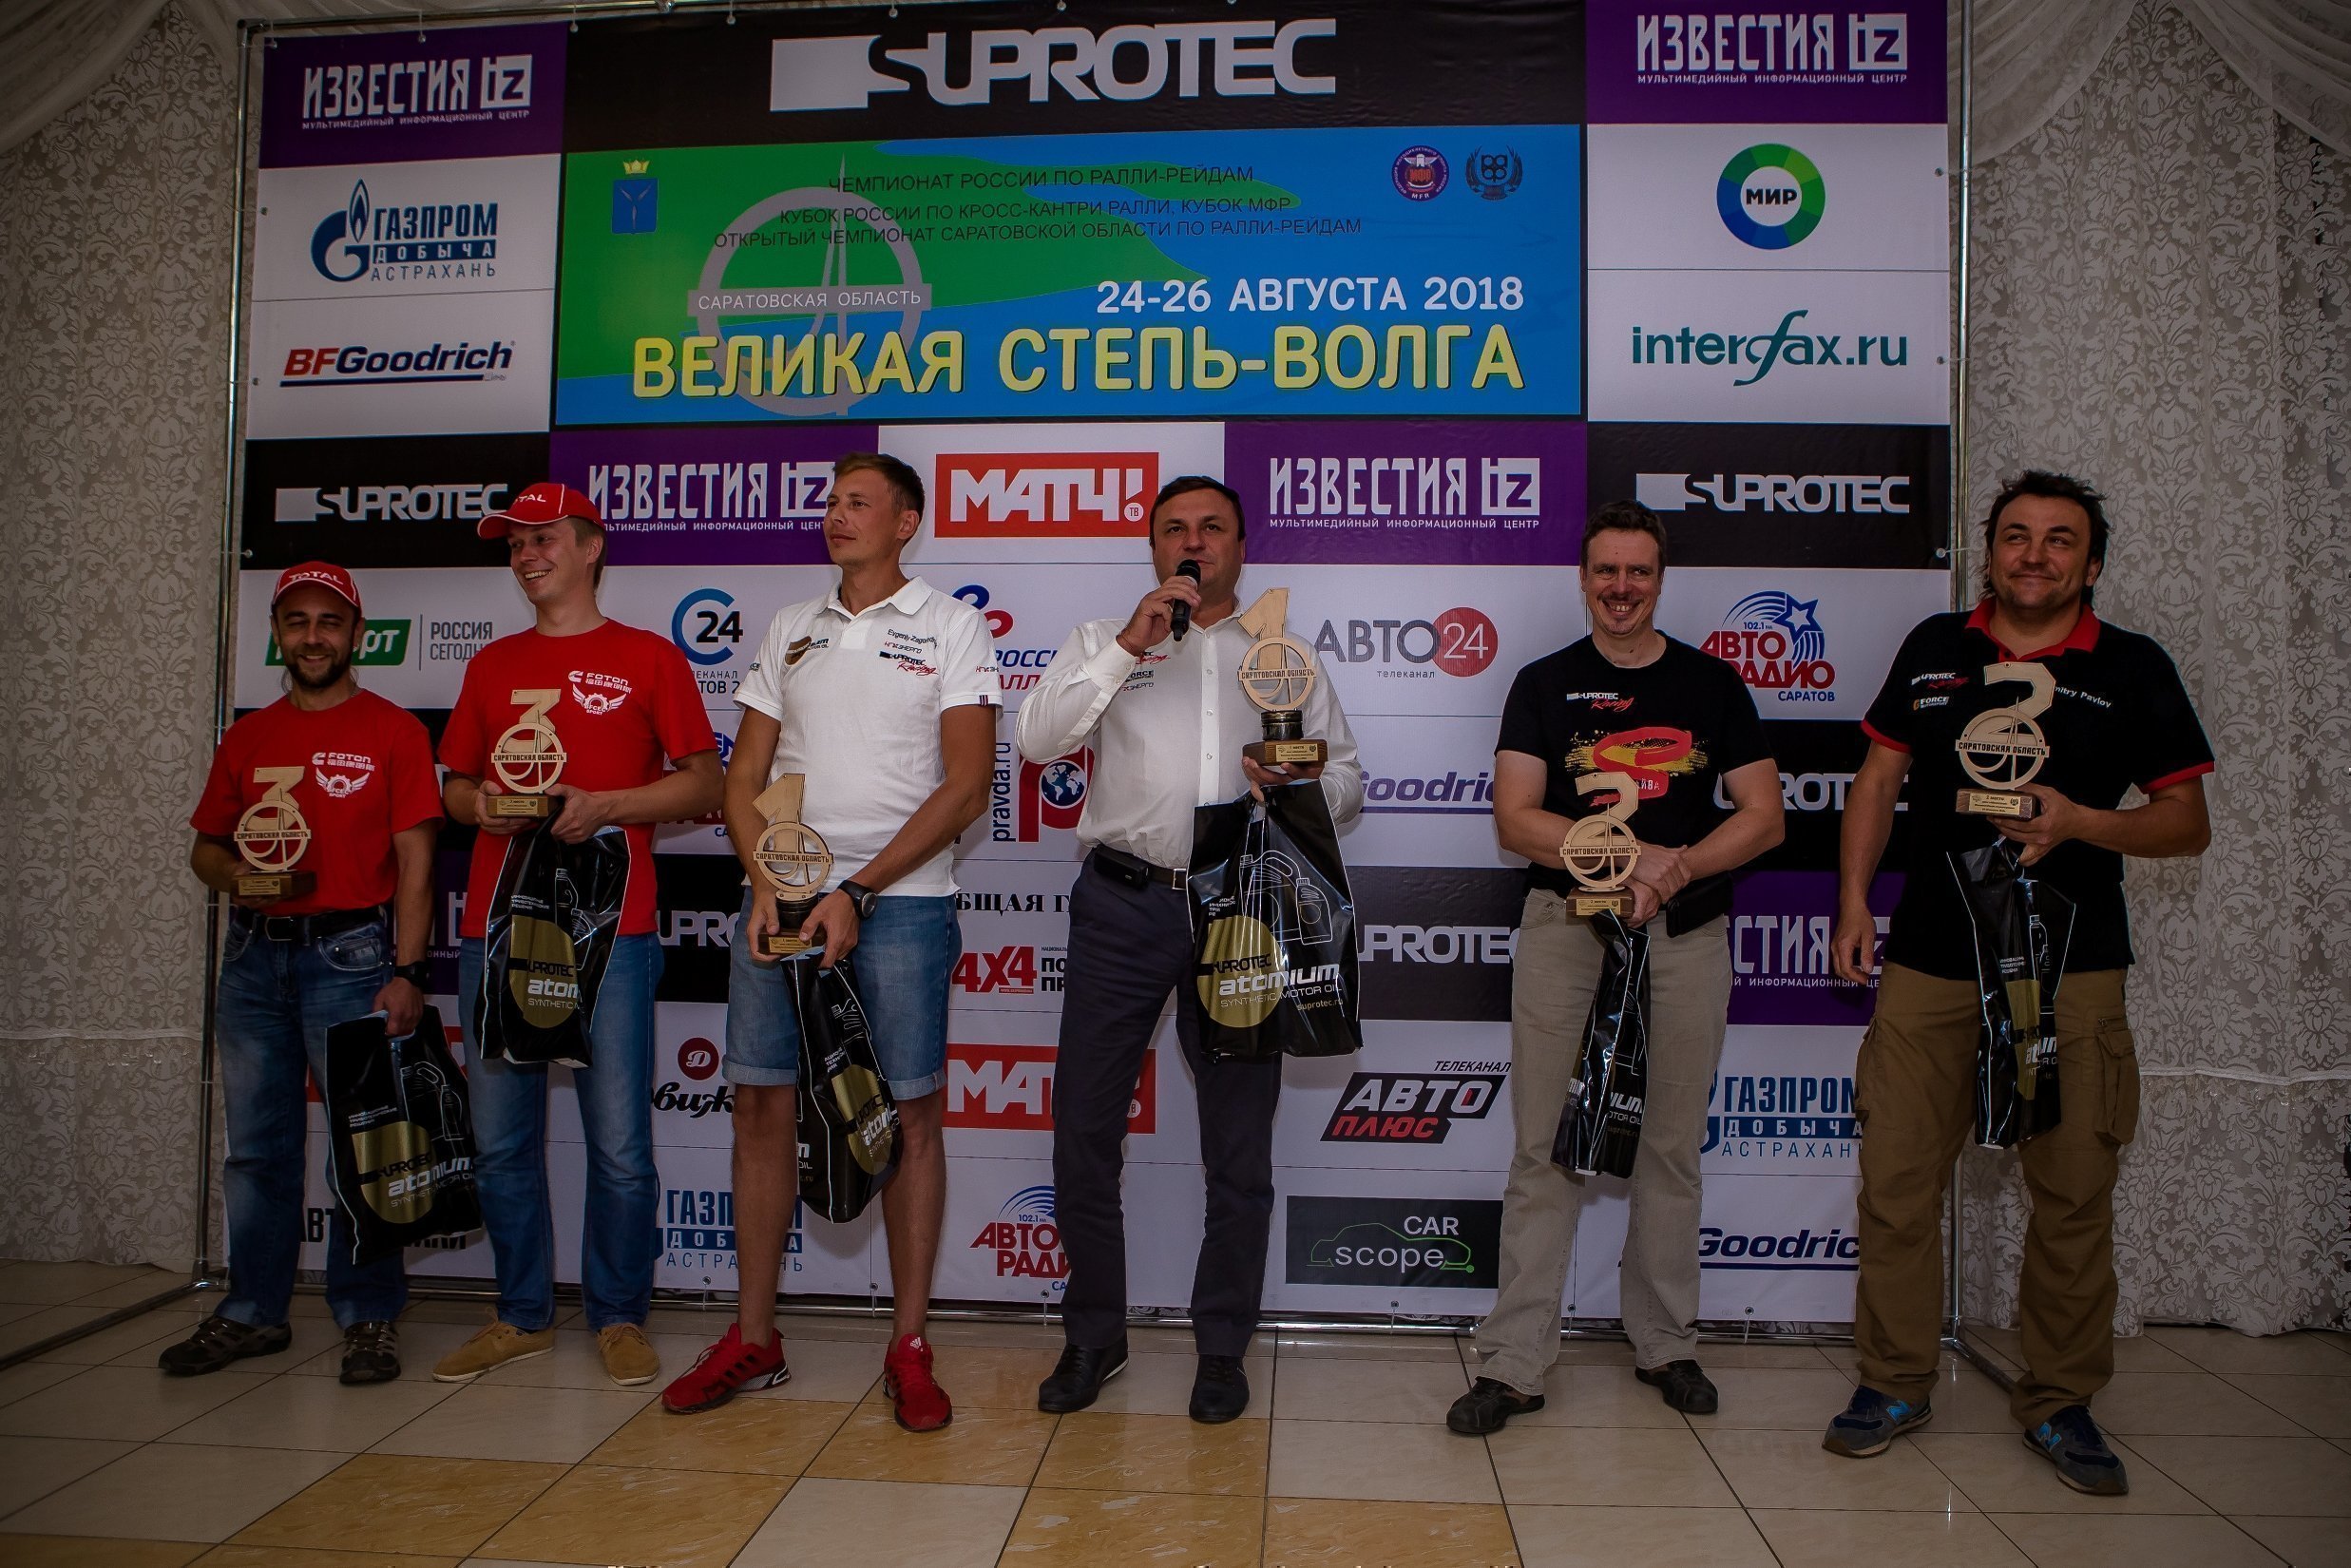 В Саратове завершился предпоследний этап чемпионата России по ралли-рейдам – баха «Великая степь – Волга»